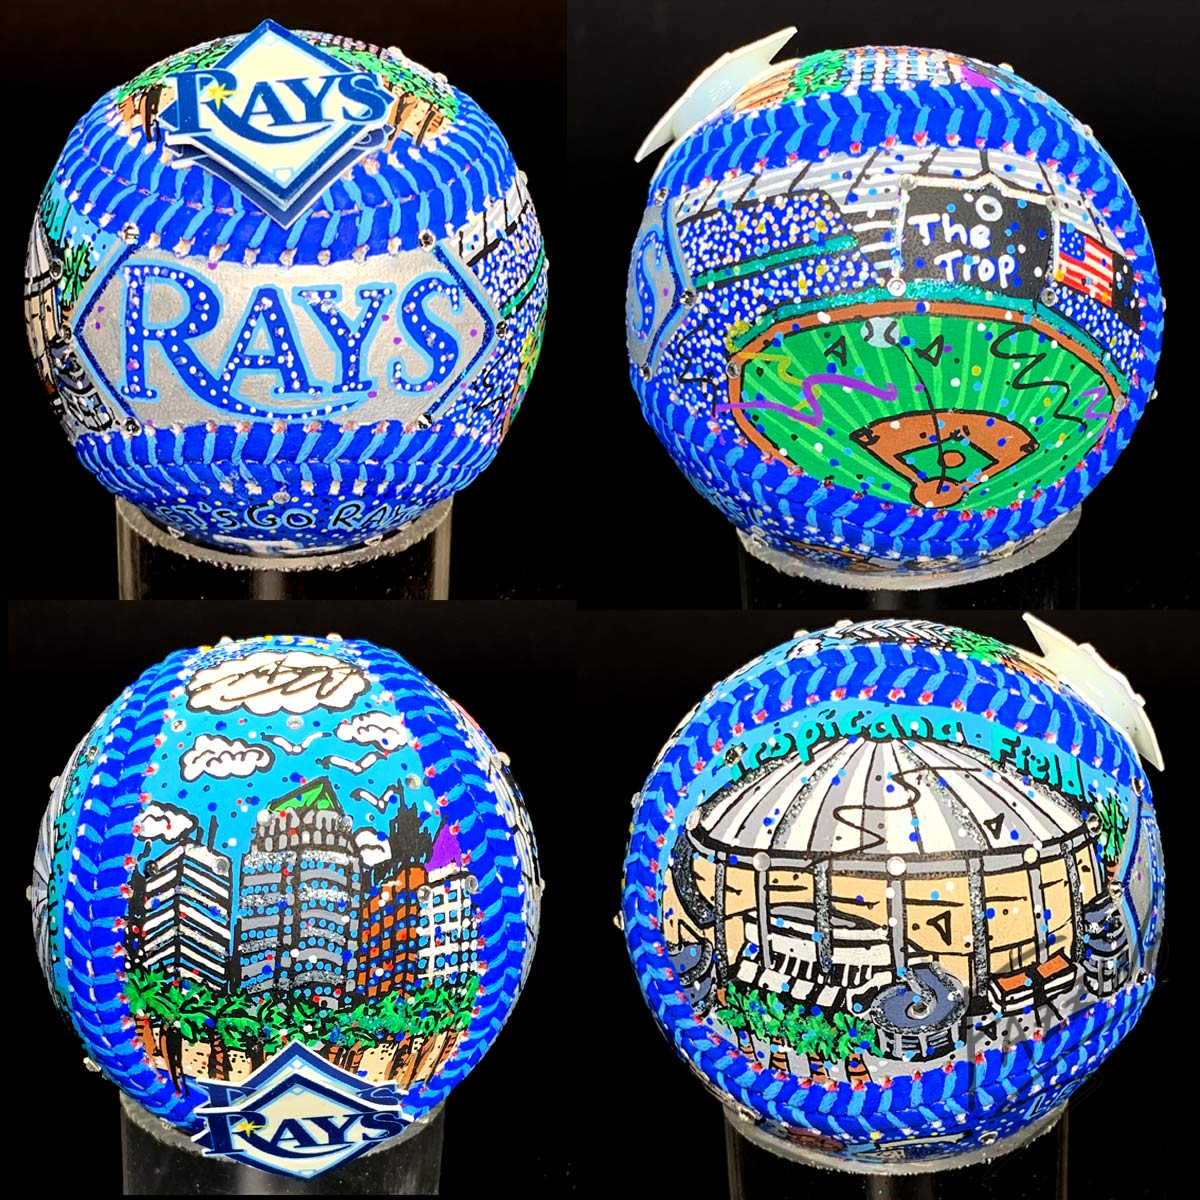 Tampa Bay Rays Hand-Painted Baseballs